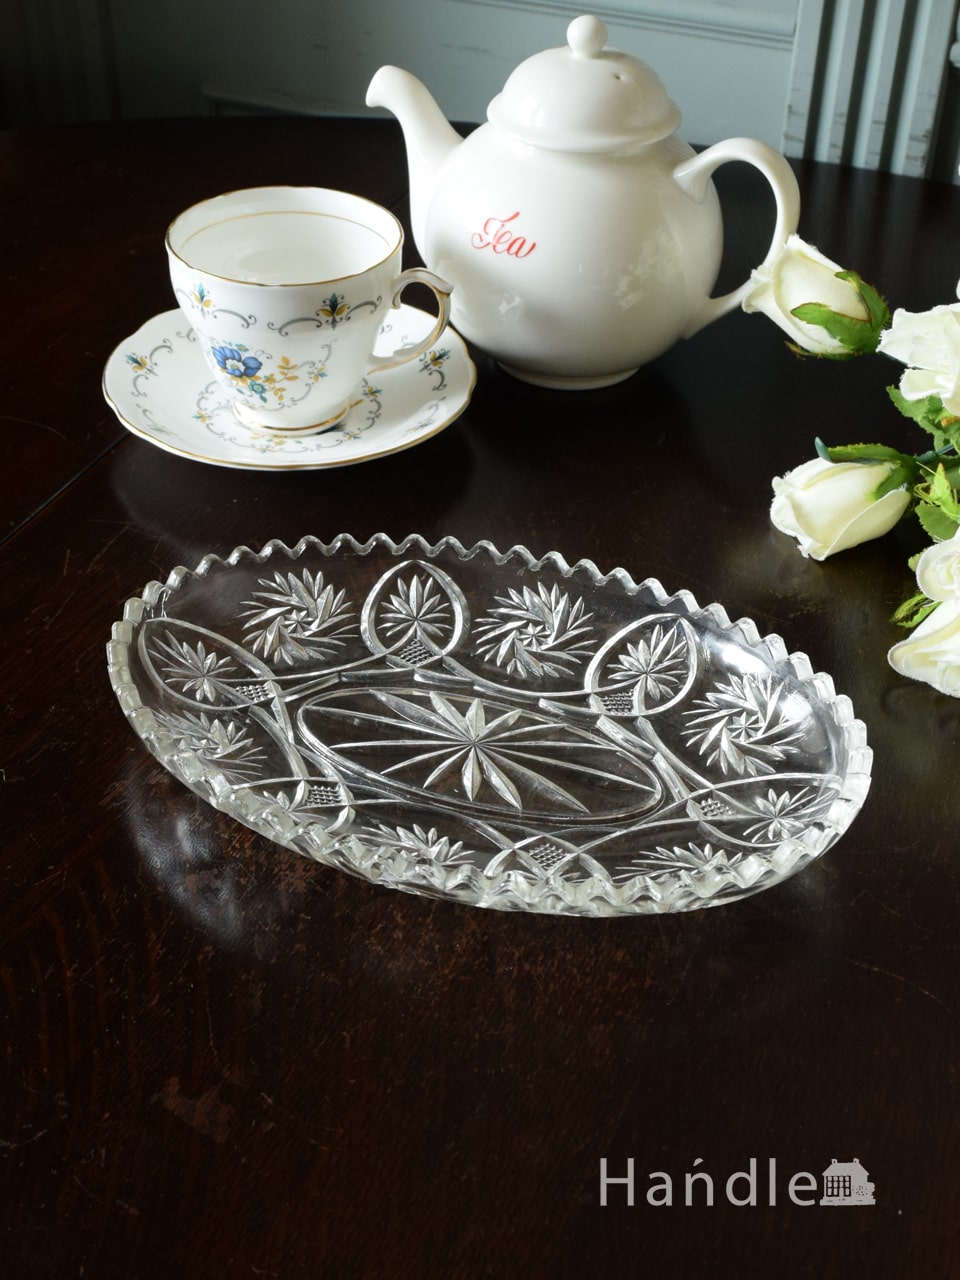 イギリスで見つけたアンティークガラスのプレート、お花が咲いた模様が華やかなプレスドグラスのお皿